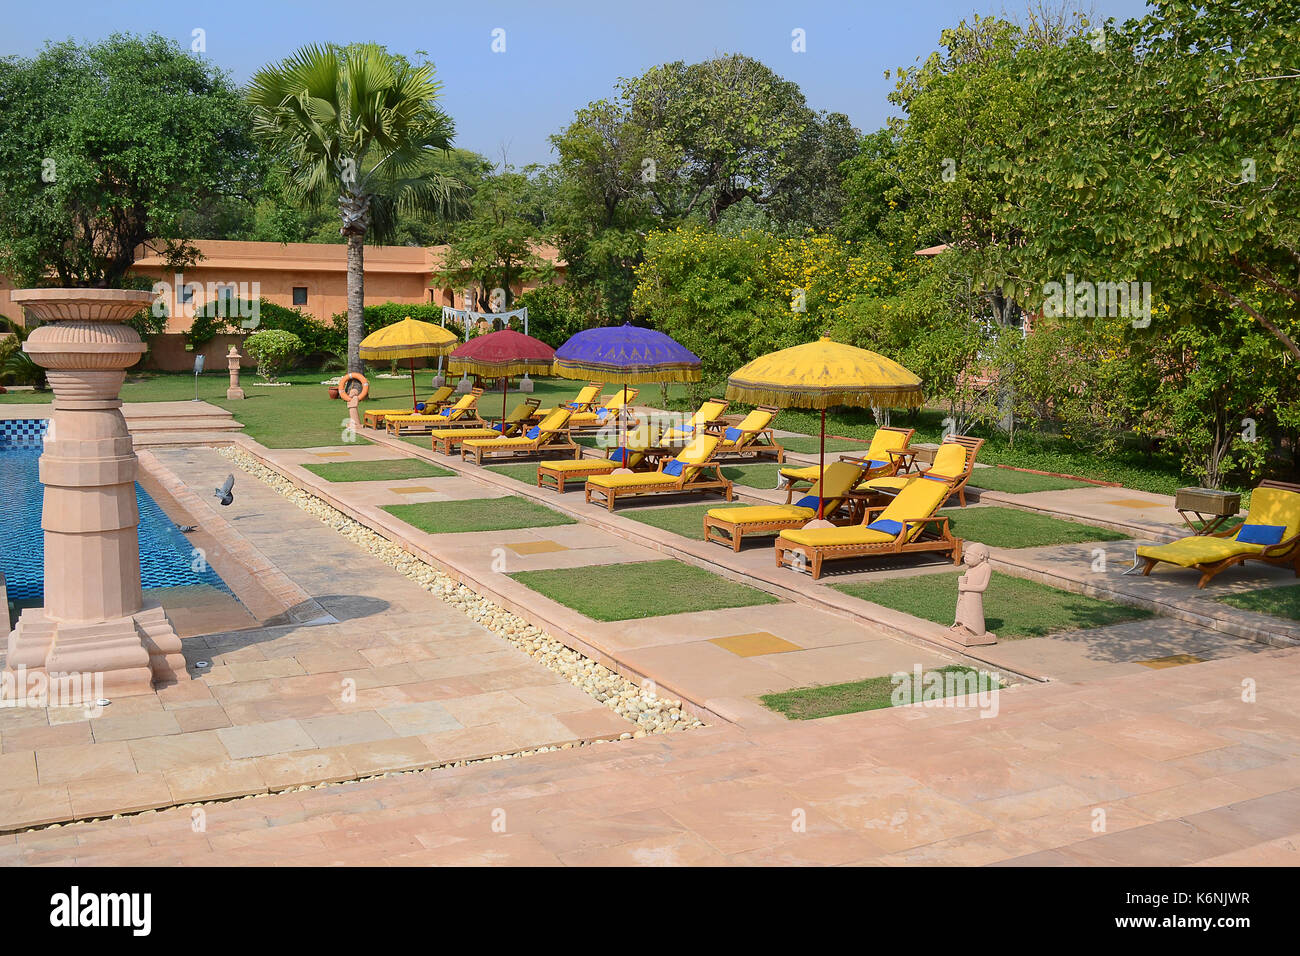 Jaipur, India - 2 novembre 2015: area piscina al oberoi rajvilas. Il resort è adagiato su 32 acri di giardini splendidamente paesaggistici. Foto Stock